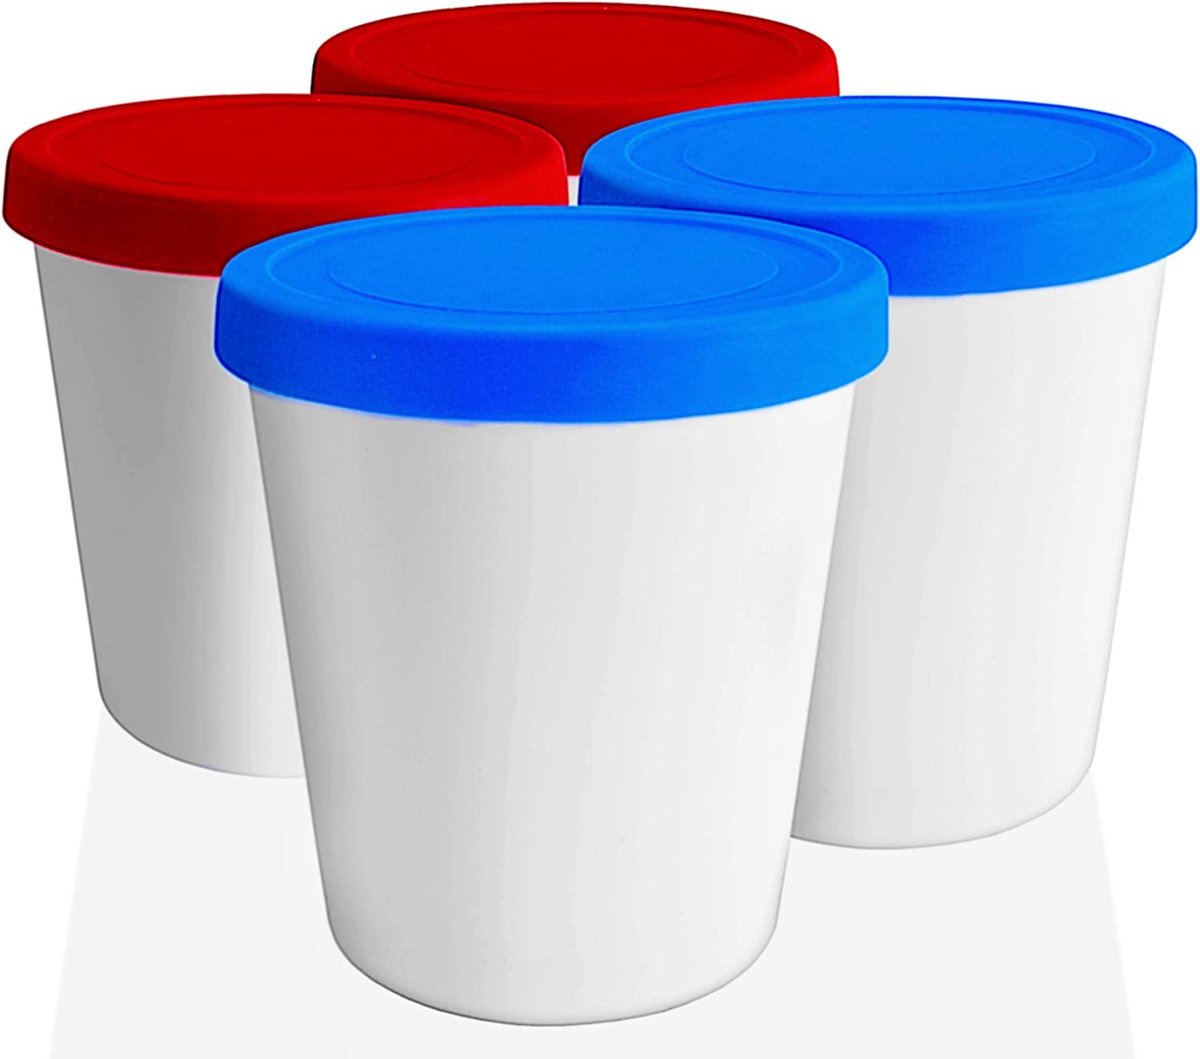 LIN ijsbewaarbakken met deksels 4-Pack - 1L ronde herbruikbare vriezer containers opbergboxen voor zelfgemaakt ijs, sorbet, bevroren yoghurt of algemene voedsel opslag